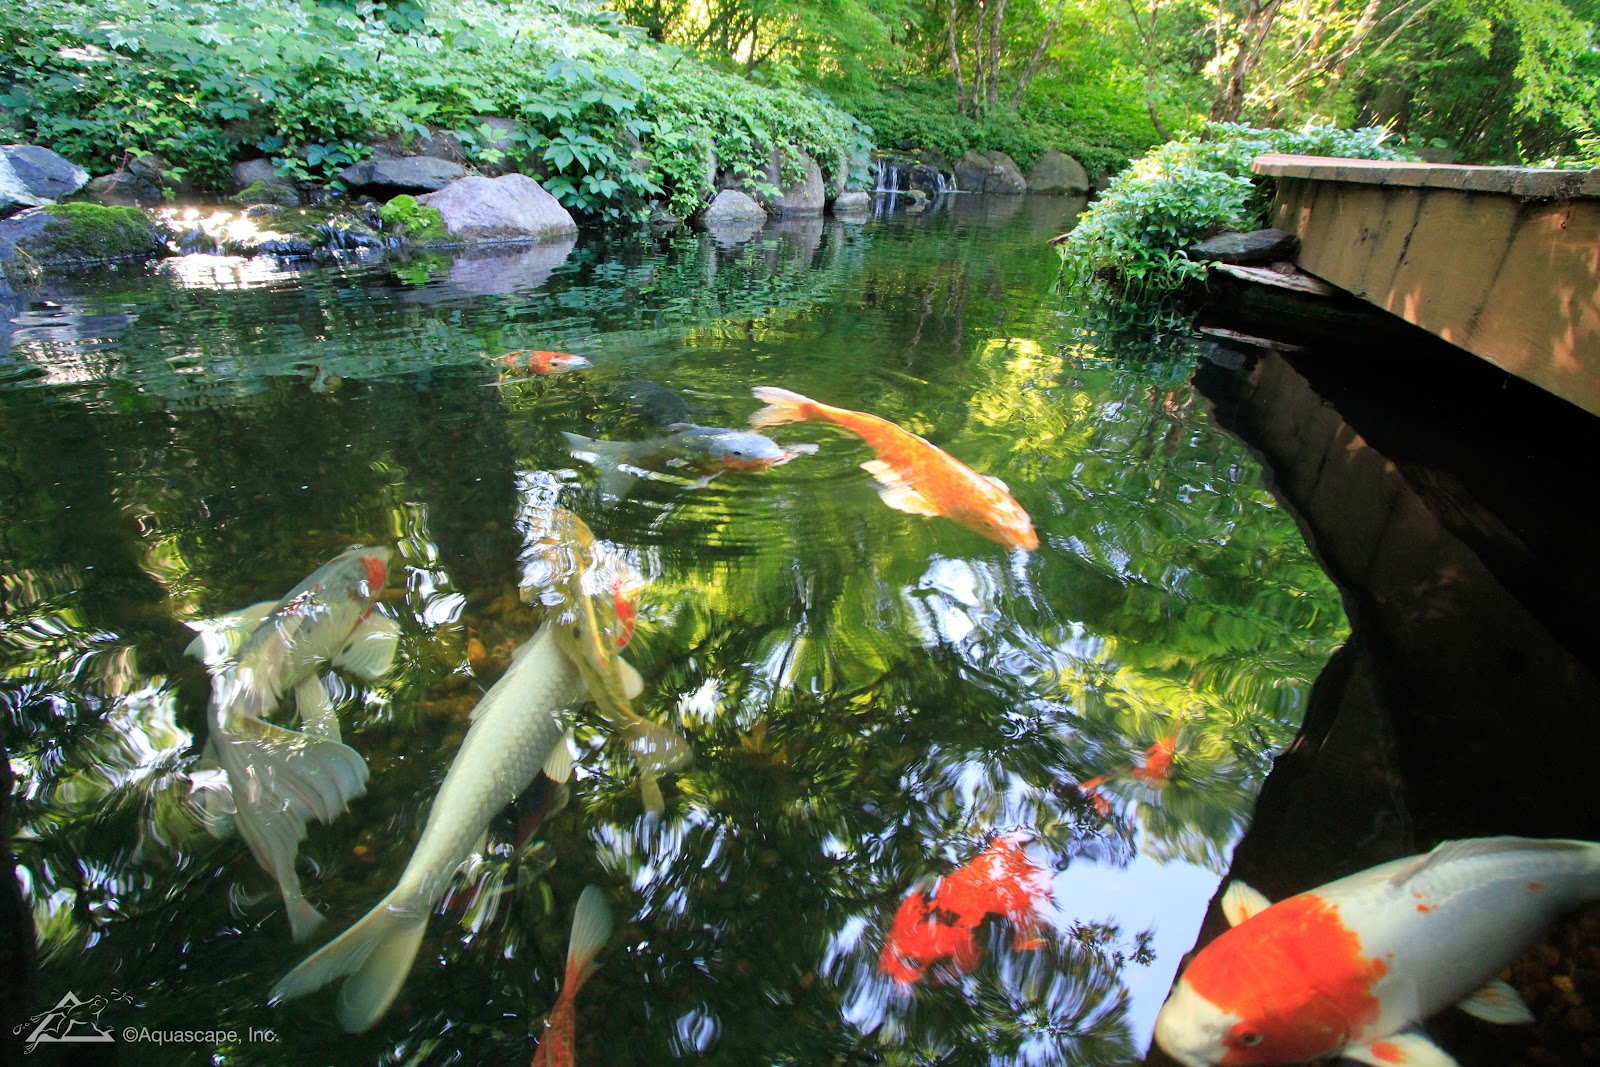 Koi and goldfish swim in backyard pond